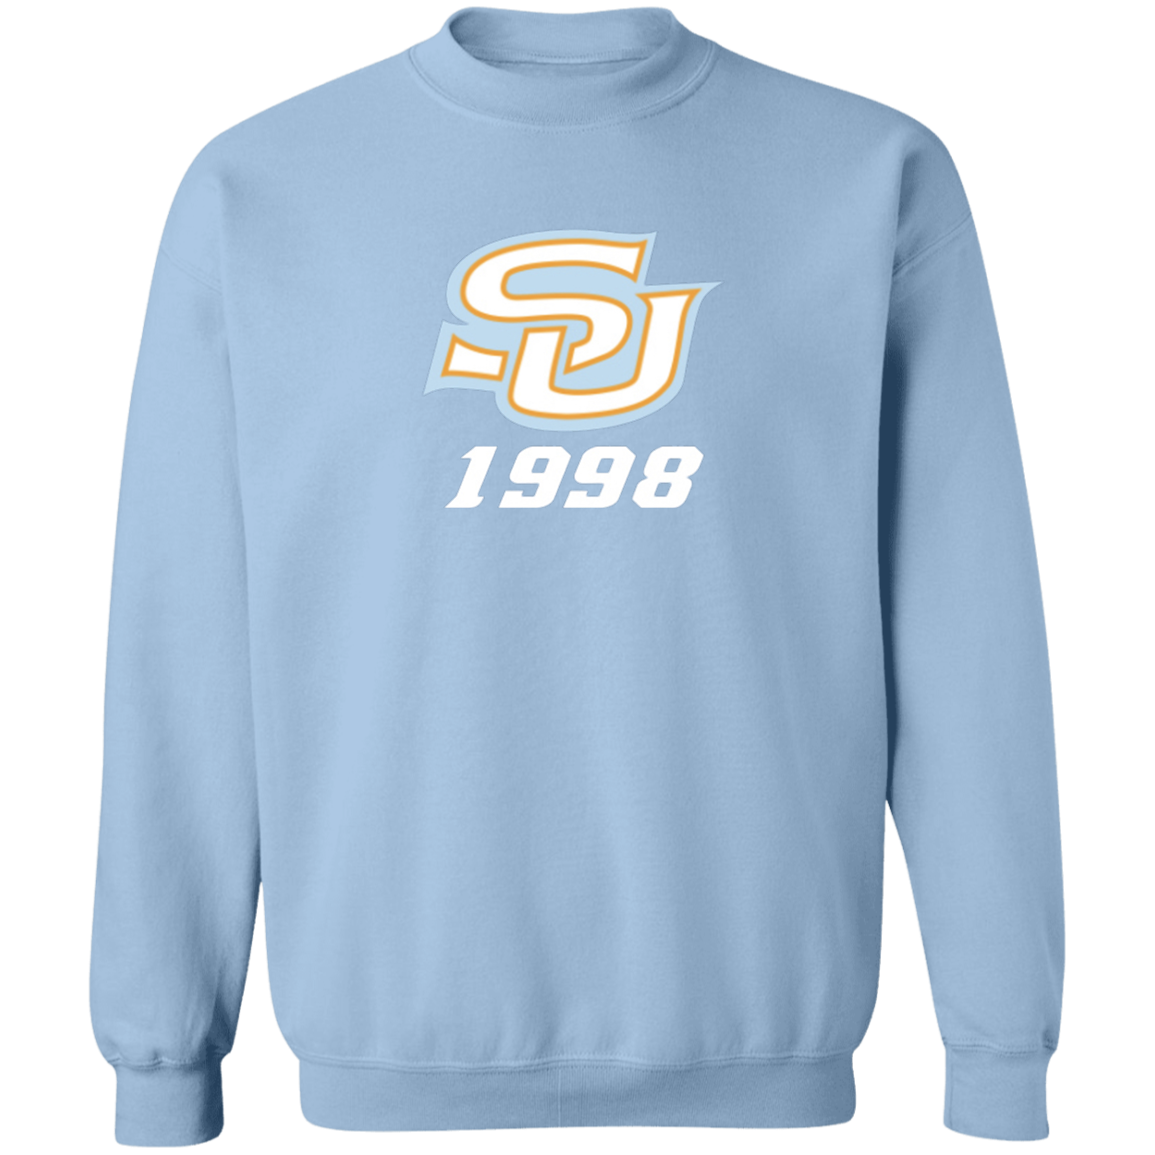 SU c/o 1998 G180 Crewneck Pullover Sweatshirt